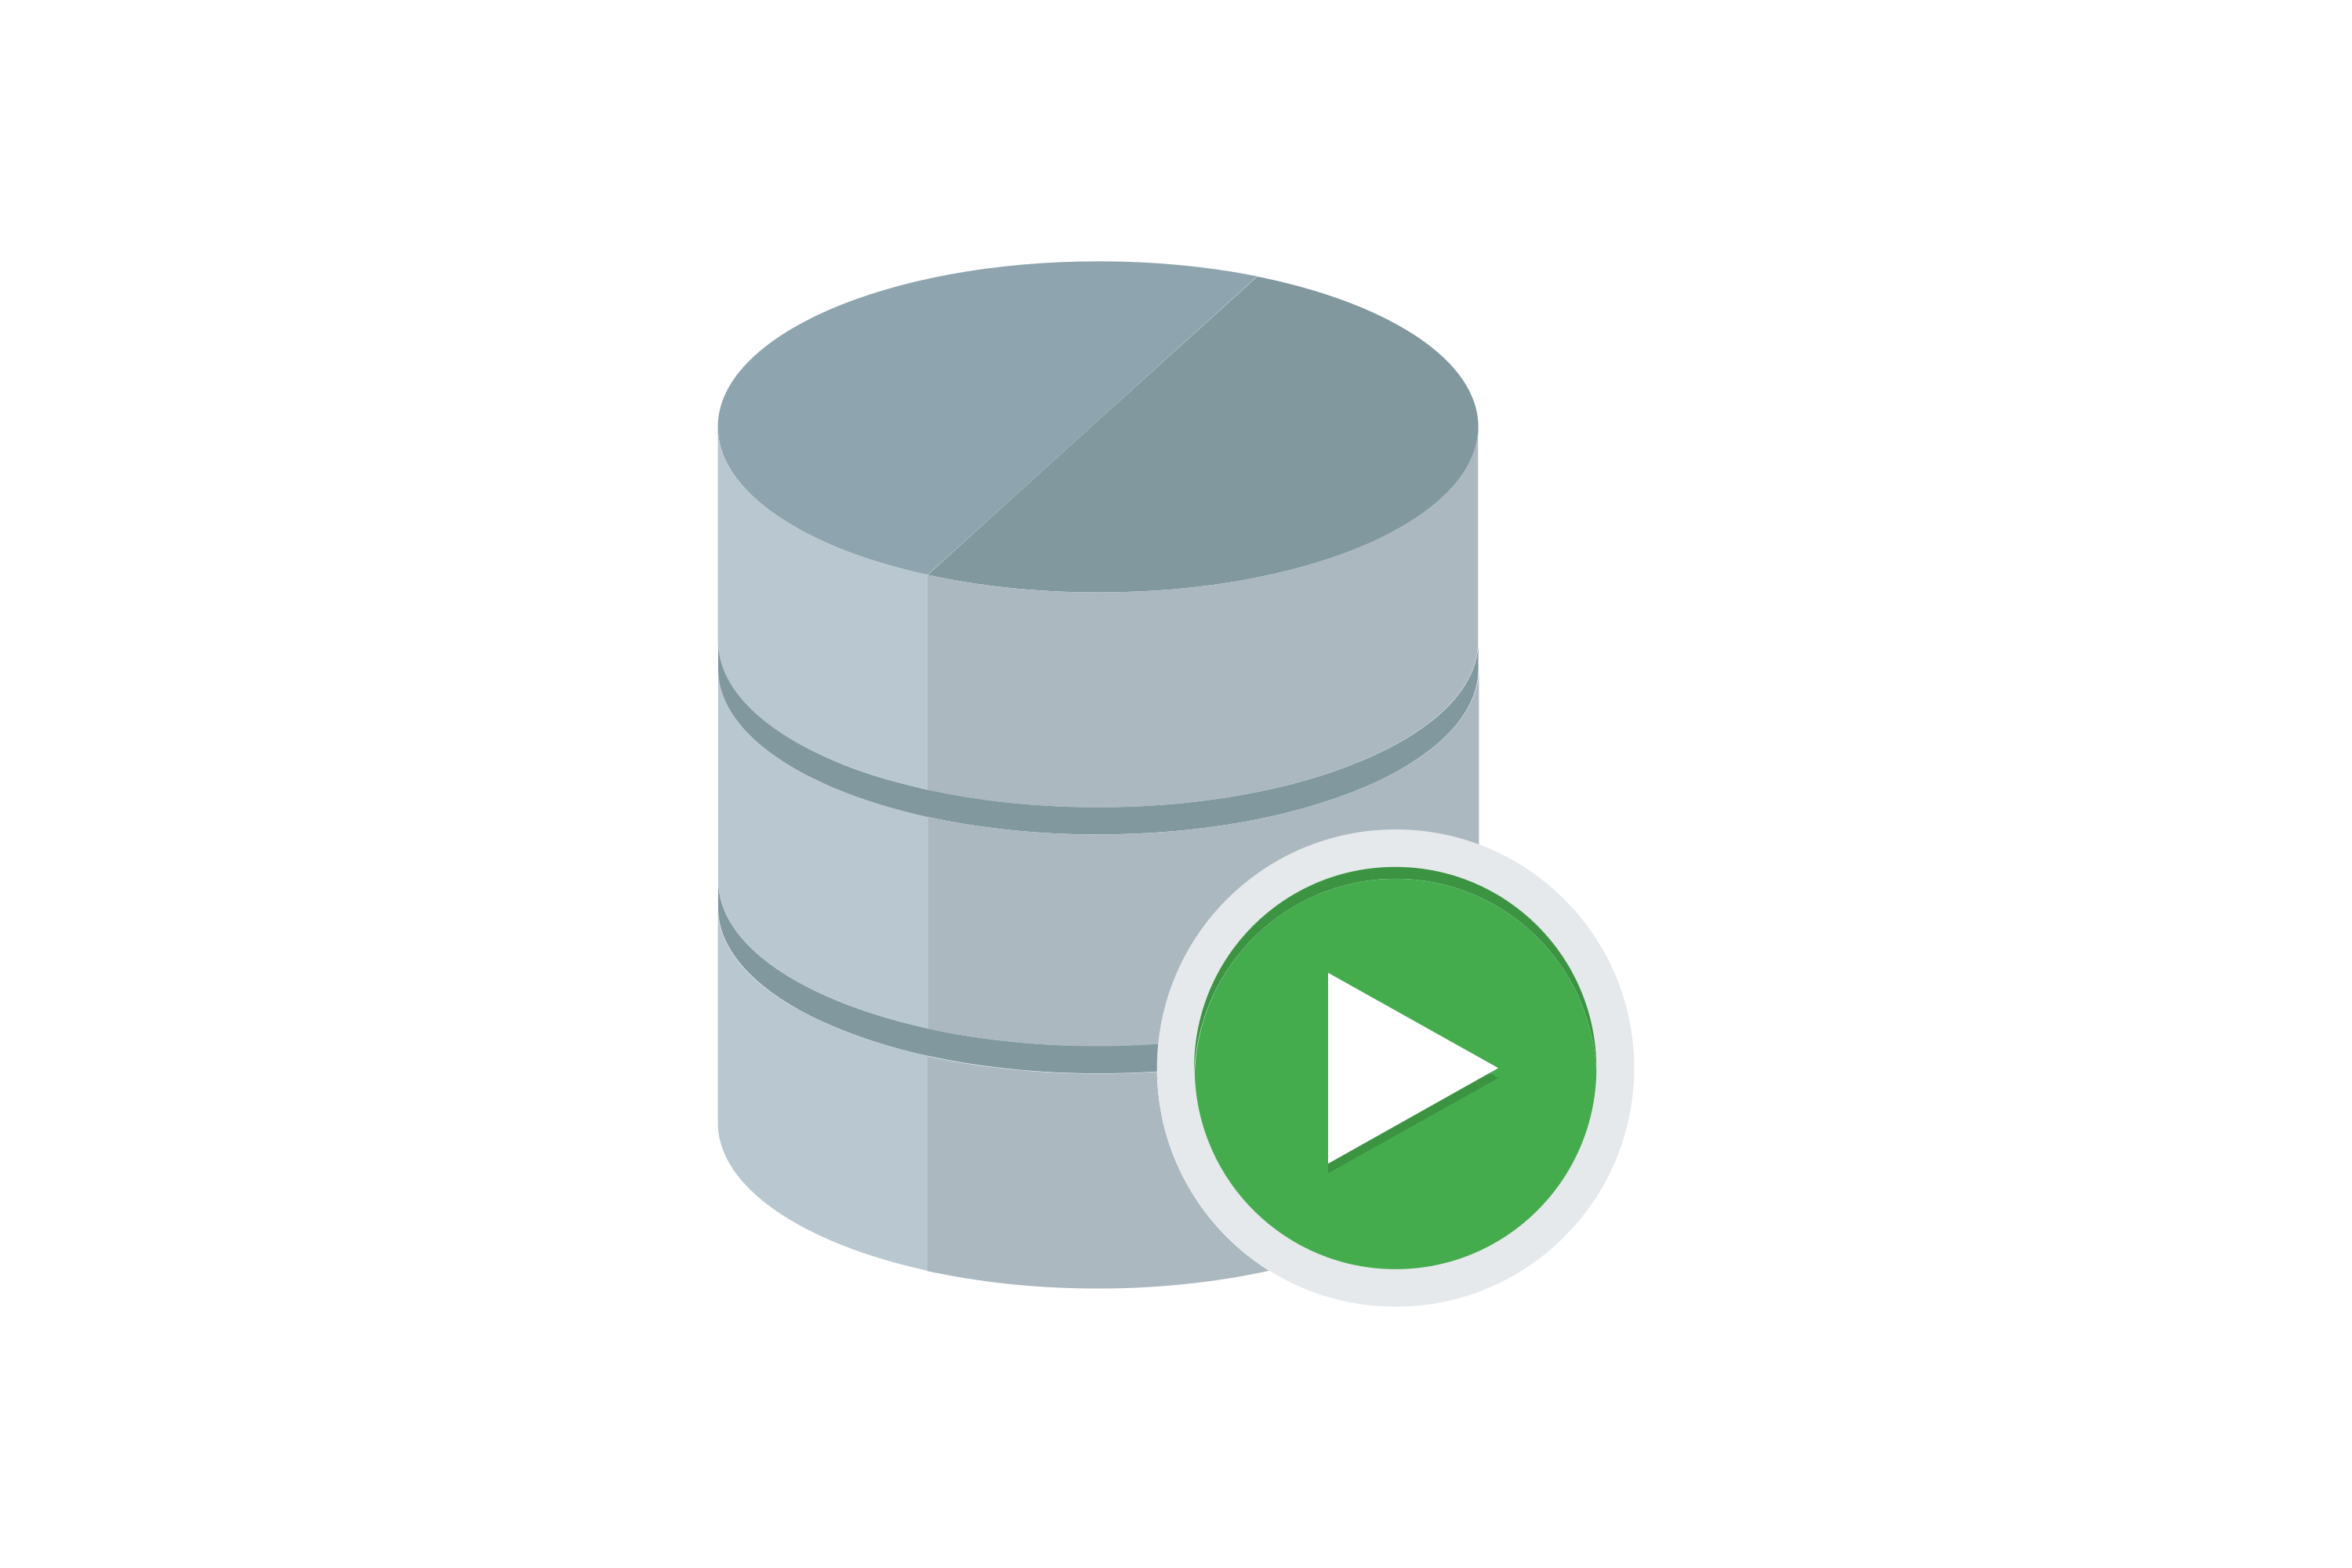 Download Oracle SQL Developer Logo in SVG Vector or PNG File Format